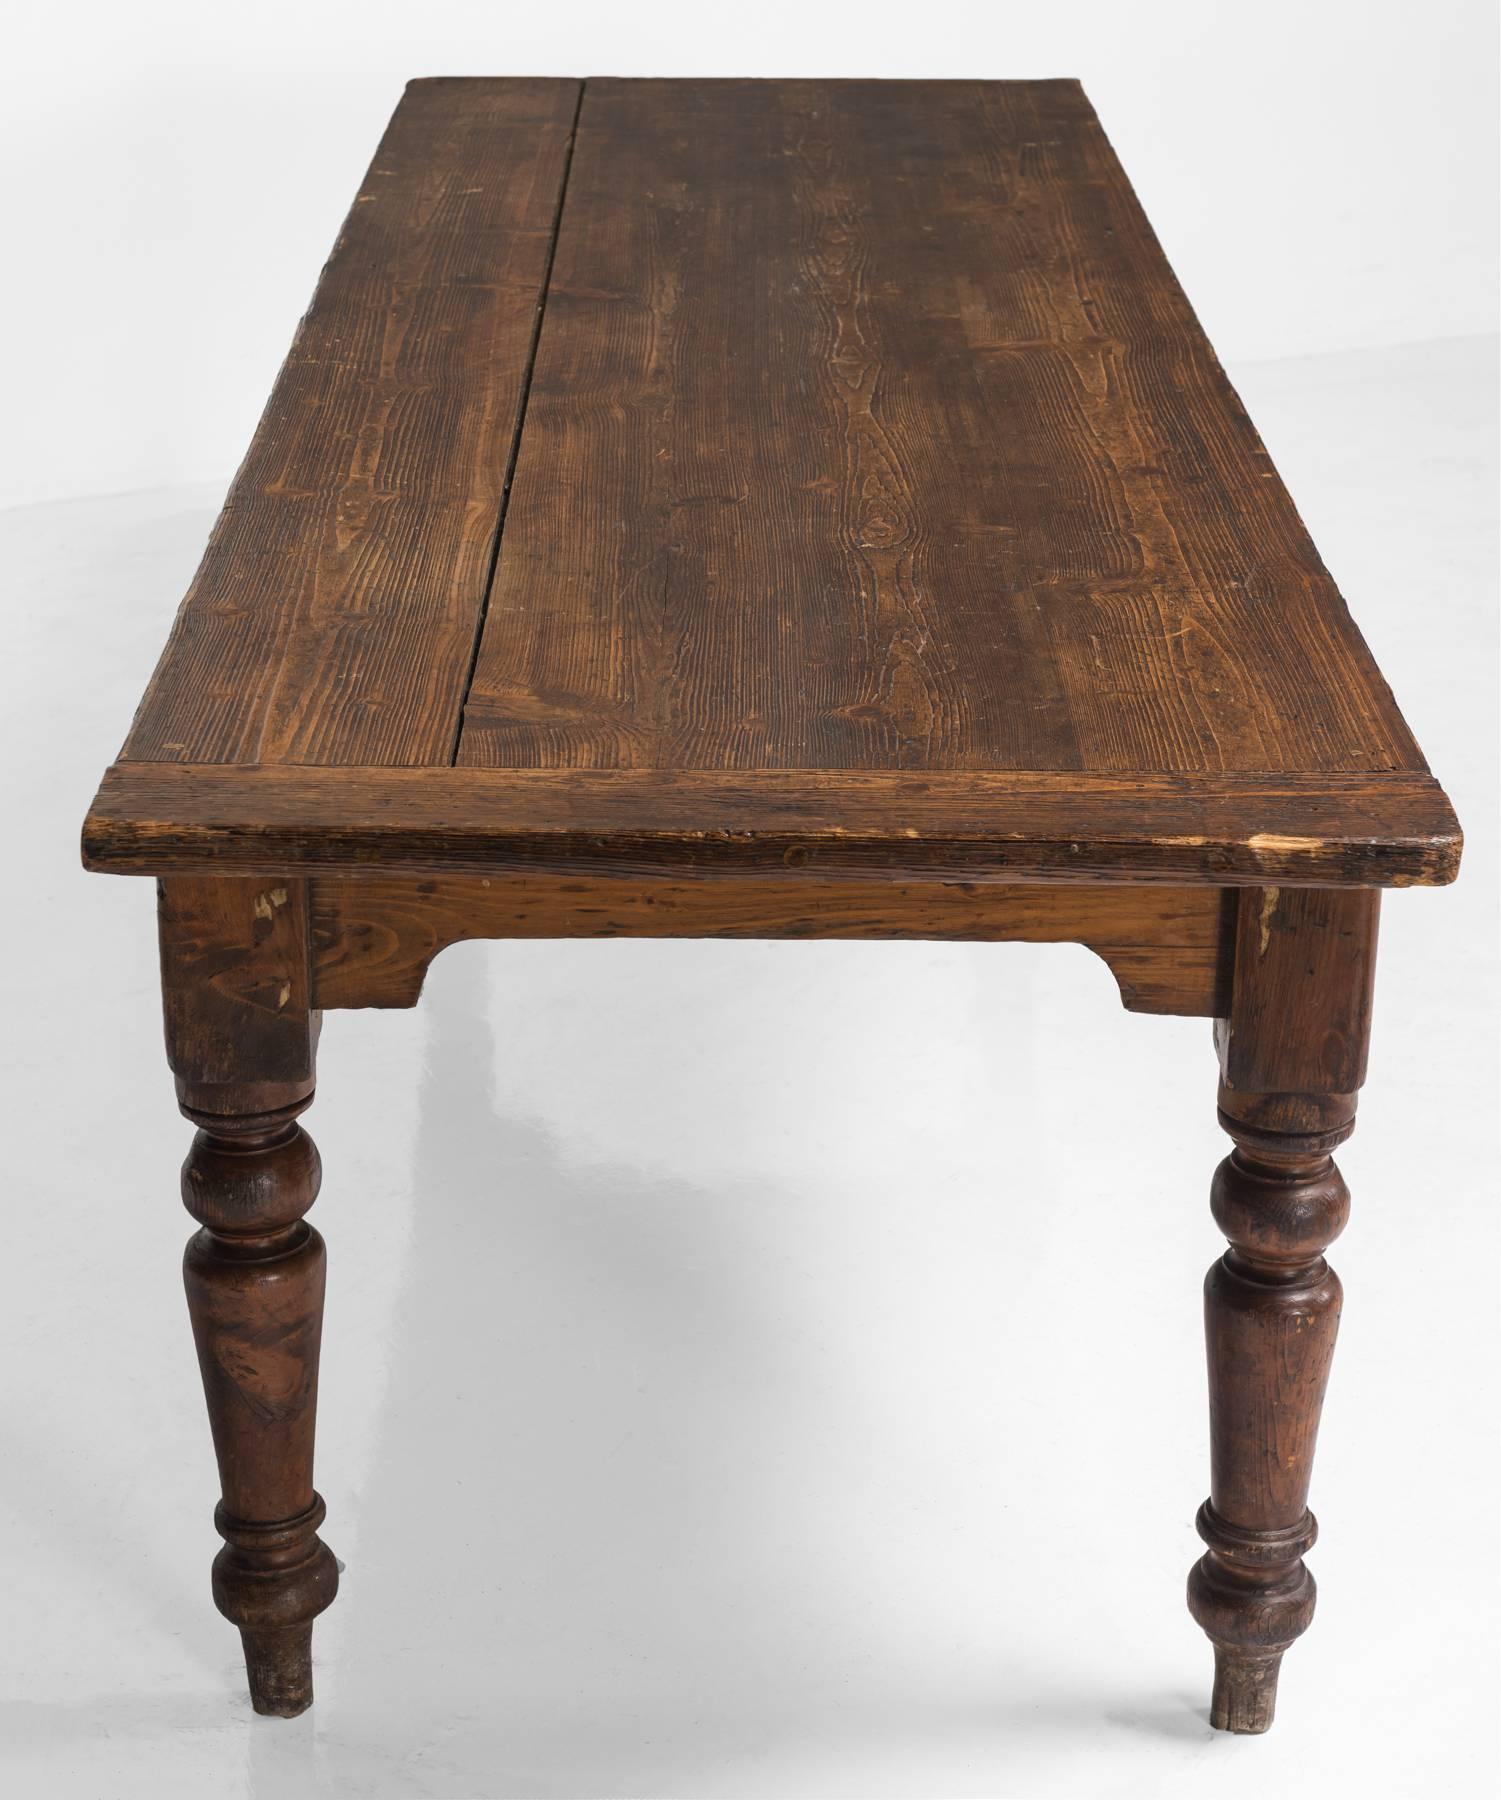 English Pine Farmhouse Table, circa 1850